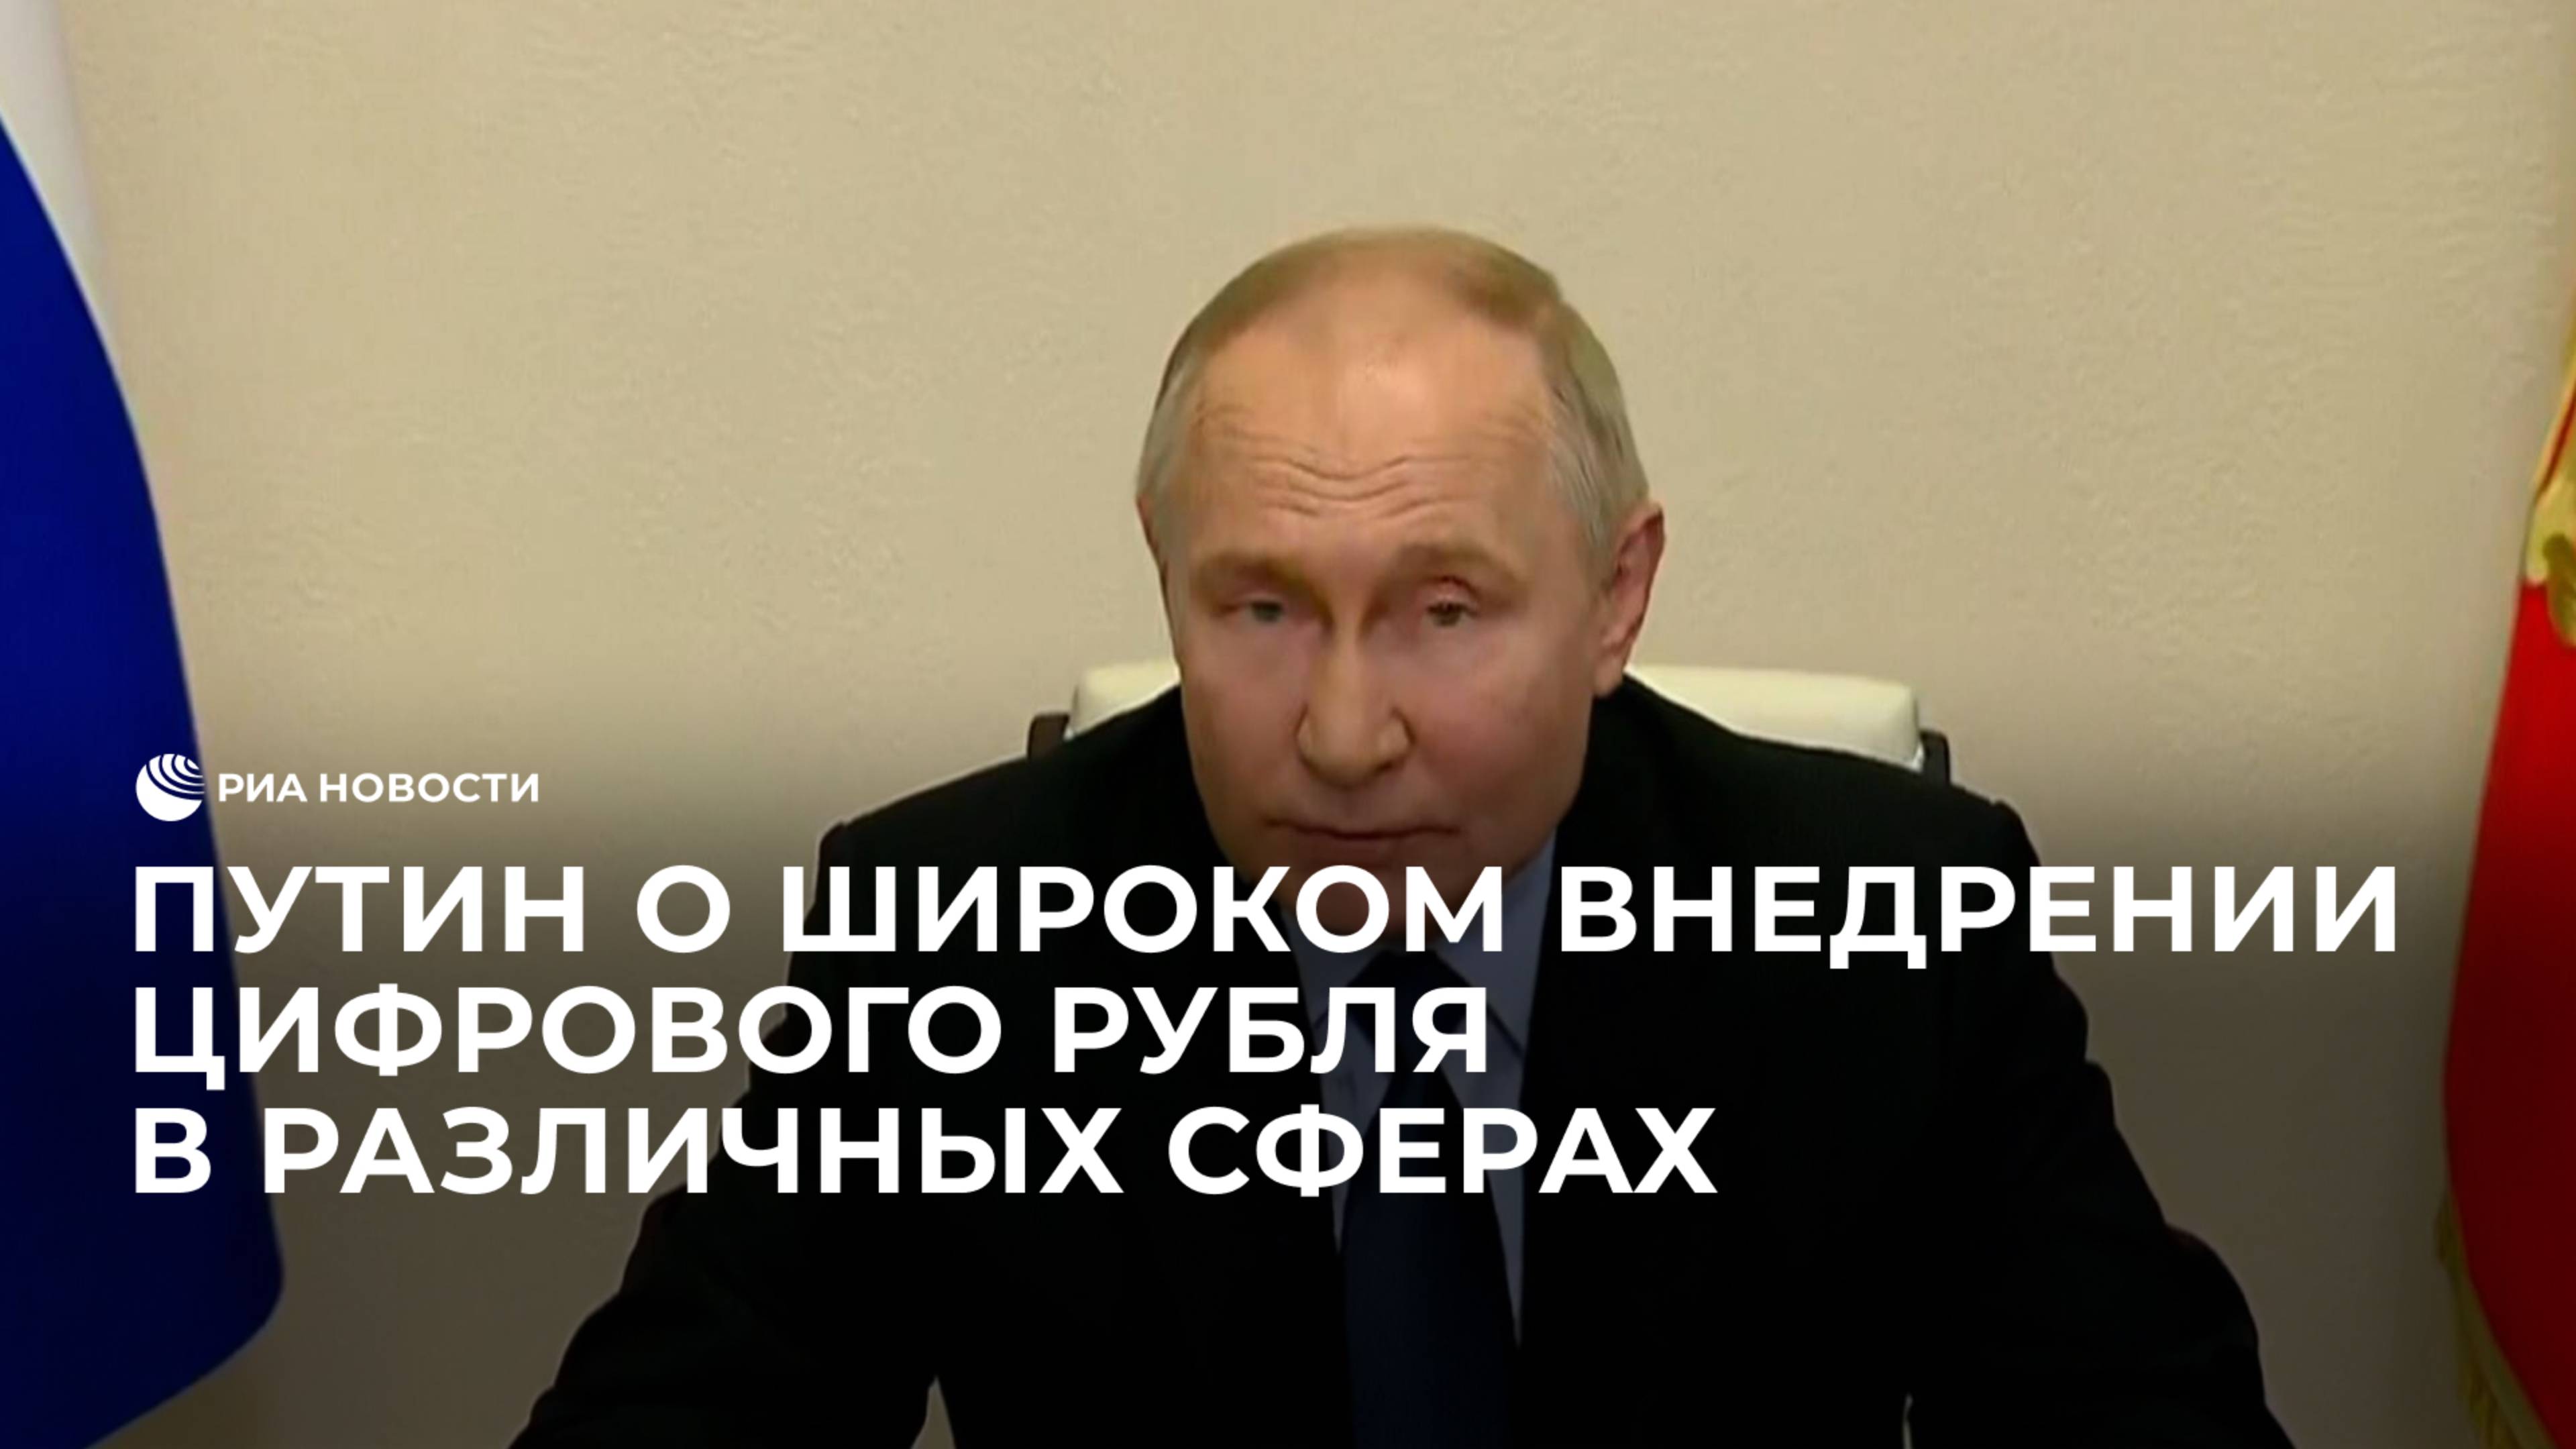 Путин о широком внедрении цифрового рубля в различных сферах